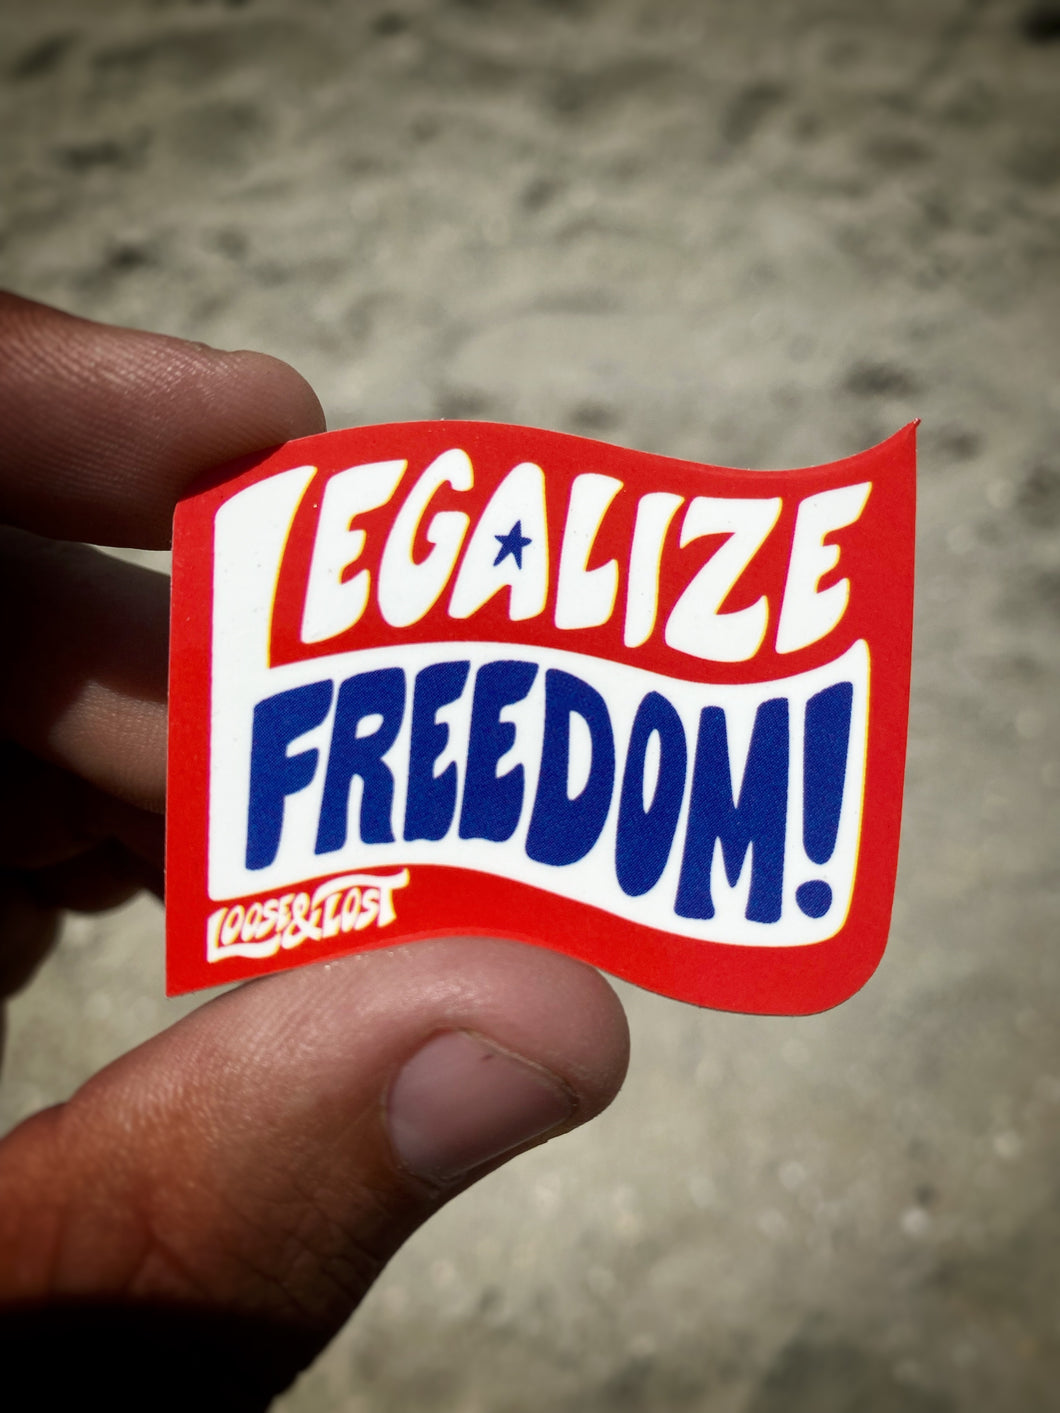 Legalize Freedom! sticker